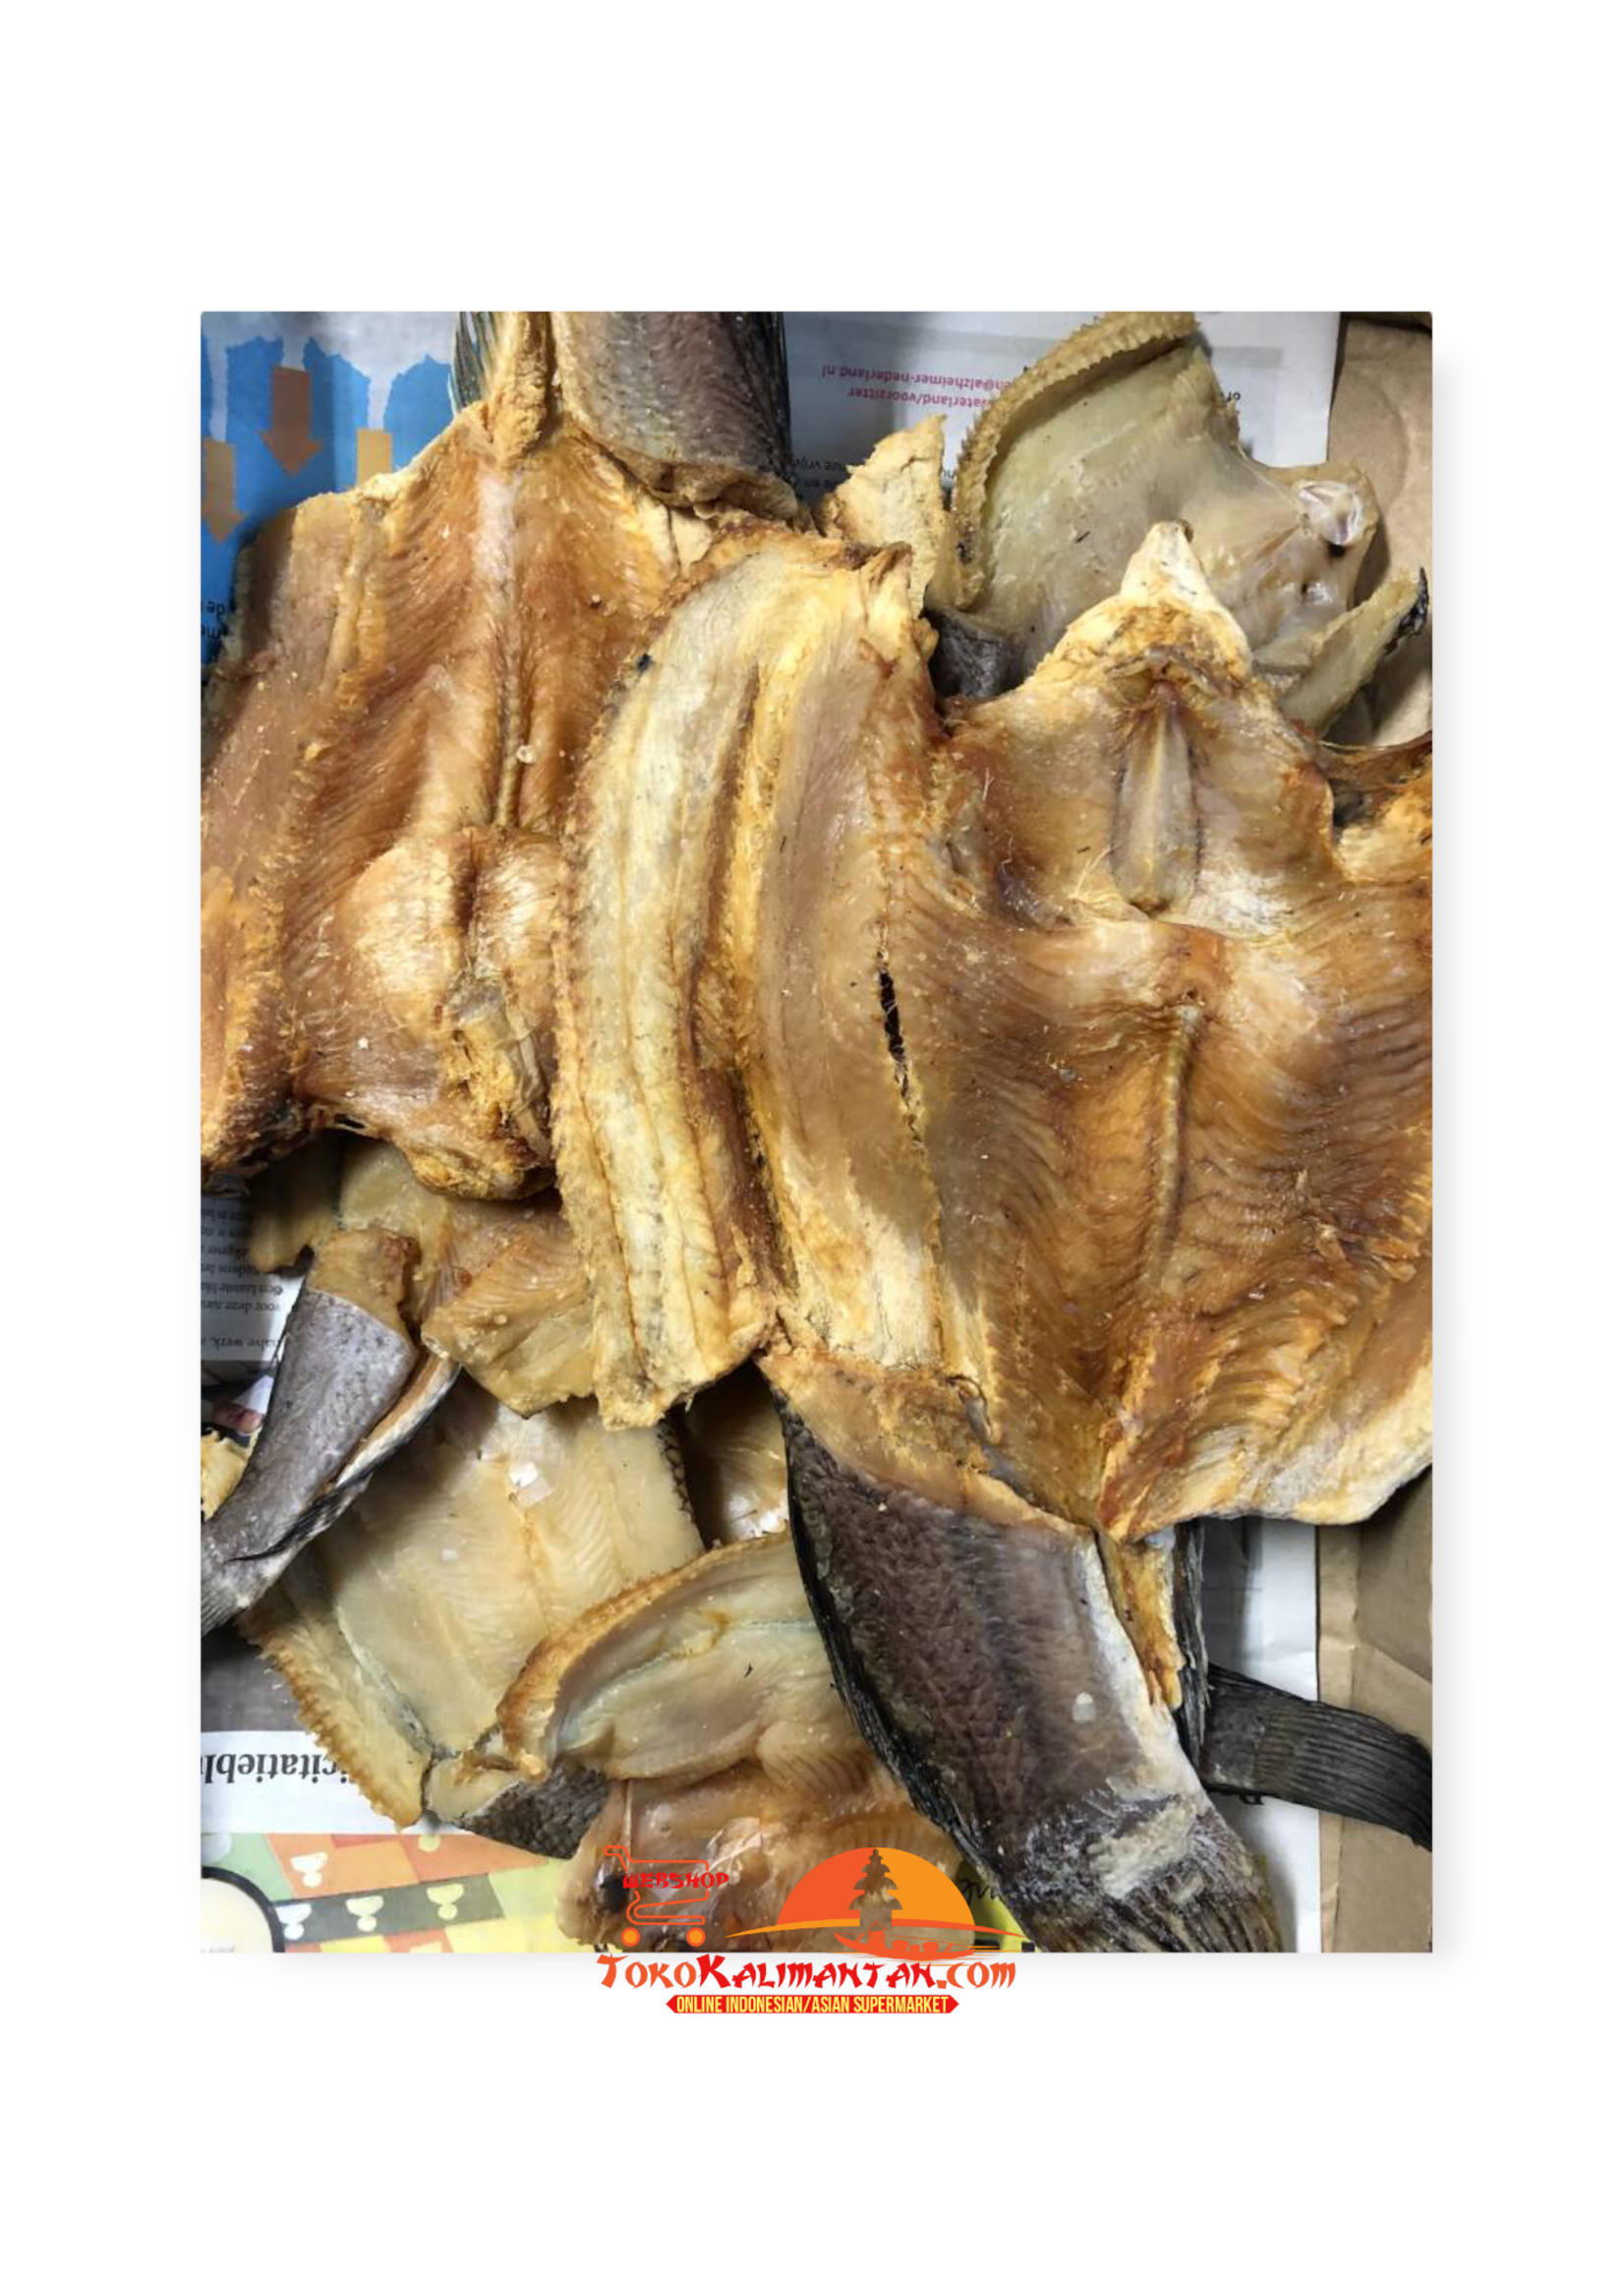 Toko Kalimantan Toko Kalimantan - Ikan Gabus besar asin 500 gram